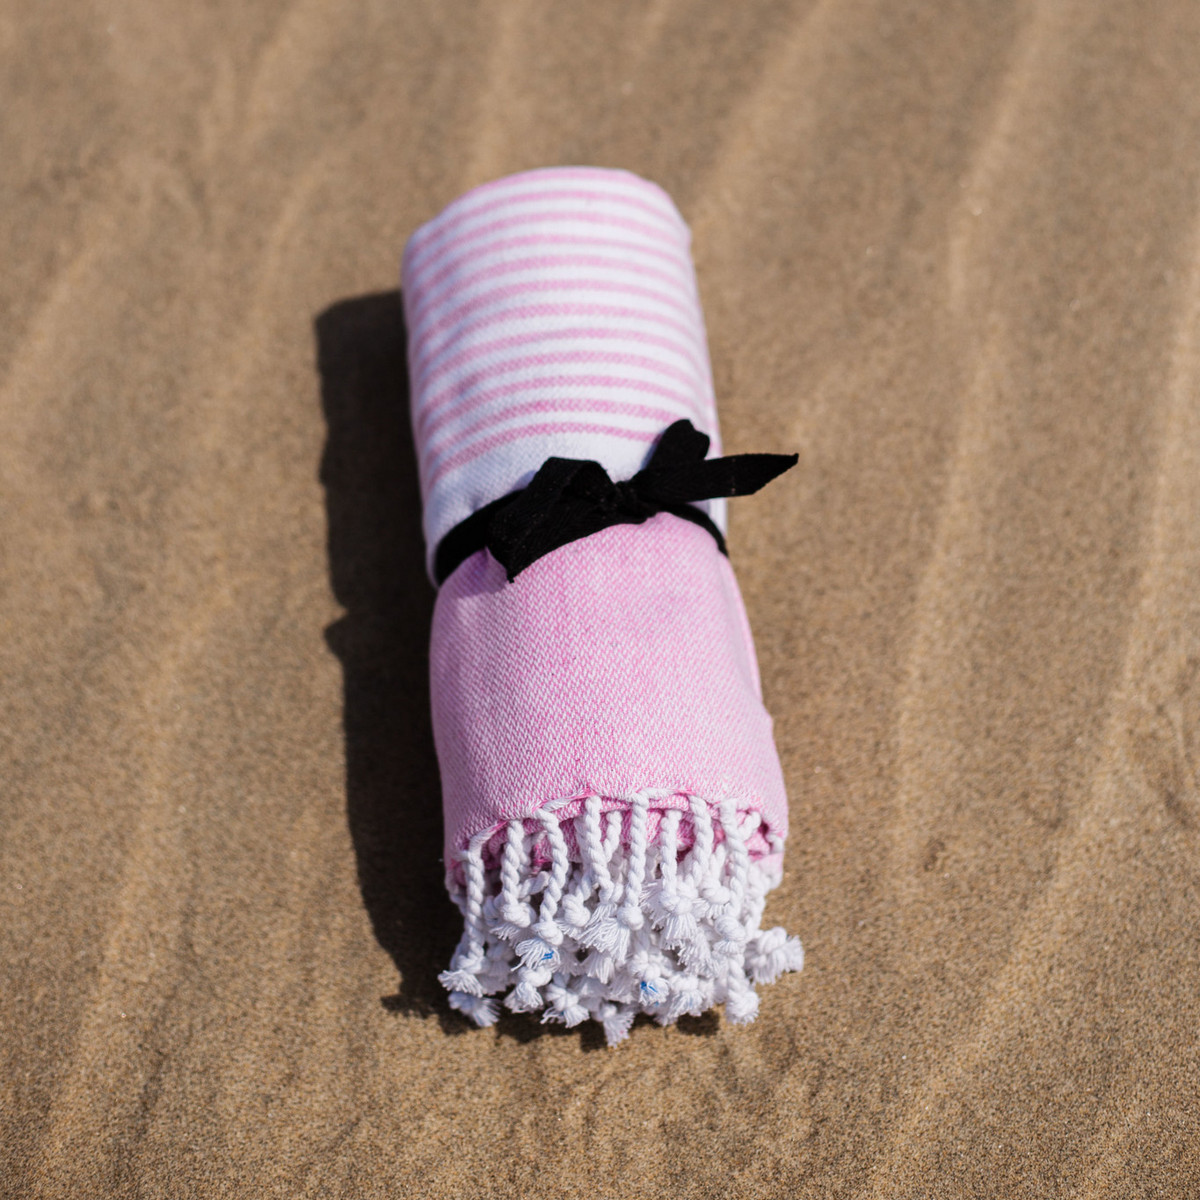 take a towel serviette spa hammam une idee cadeau chez ugo et lea (4)